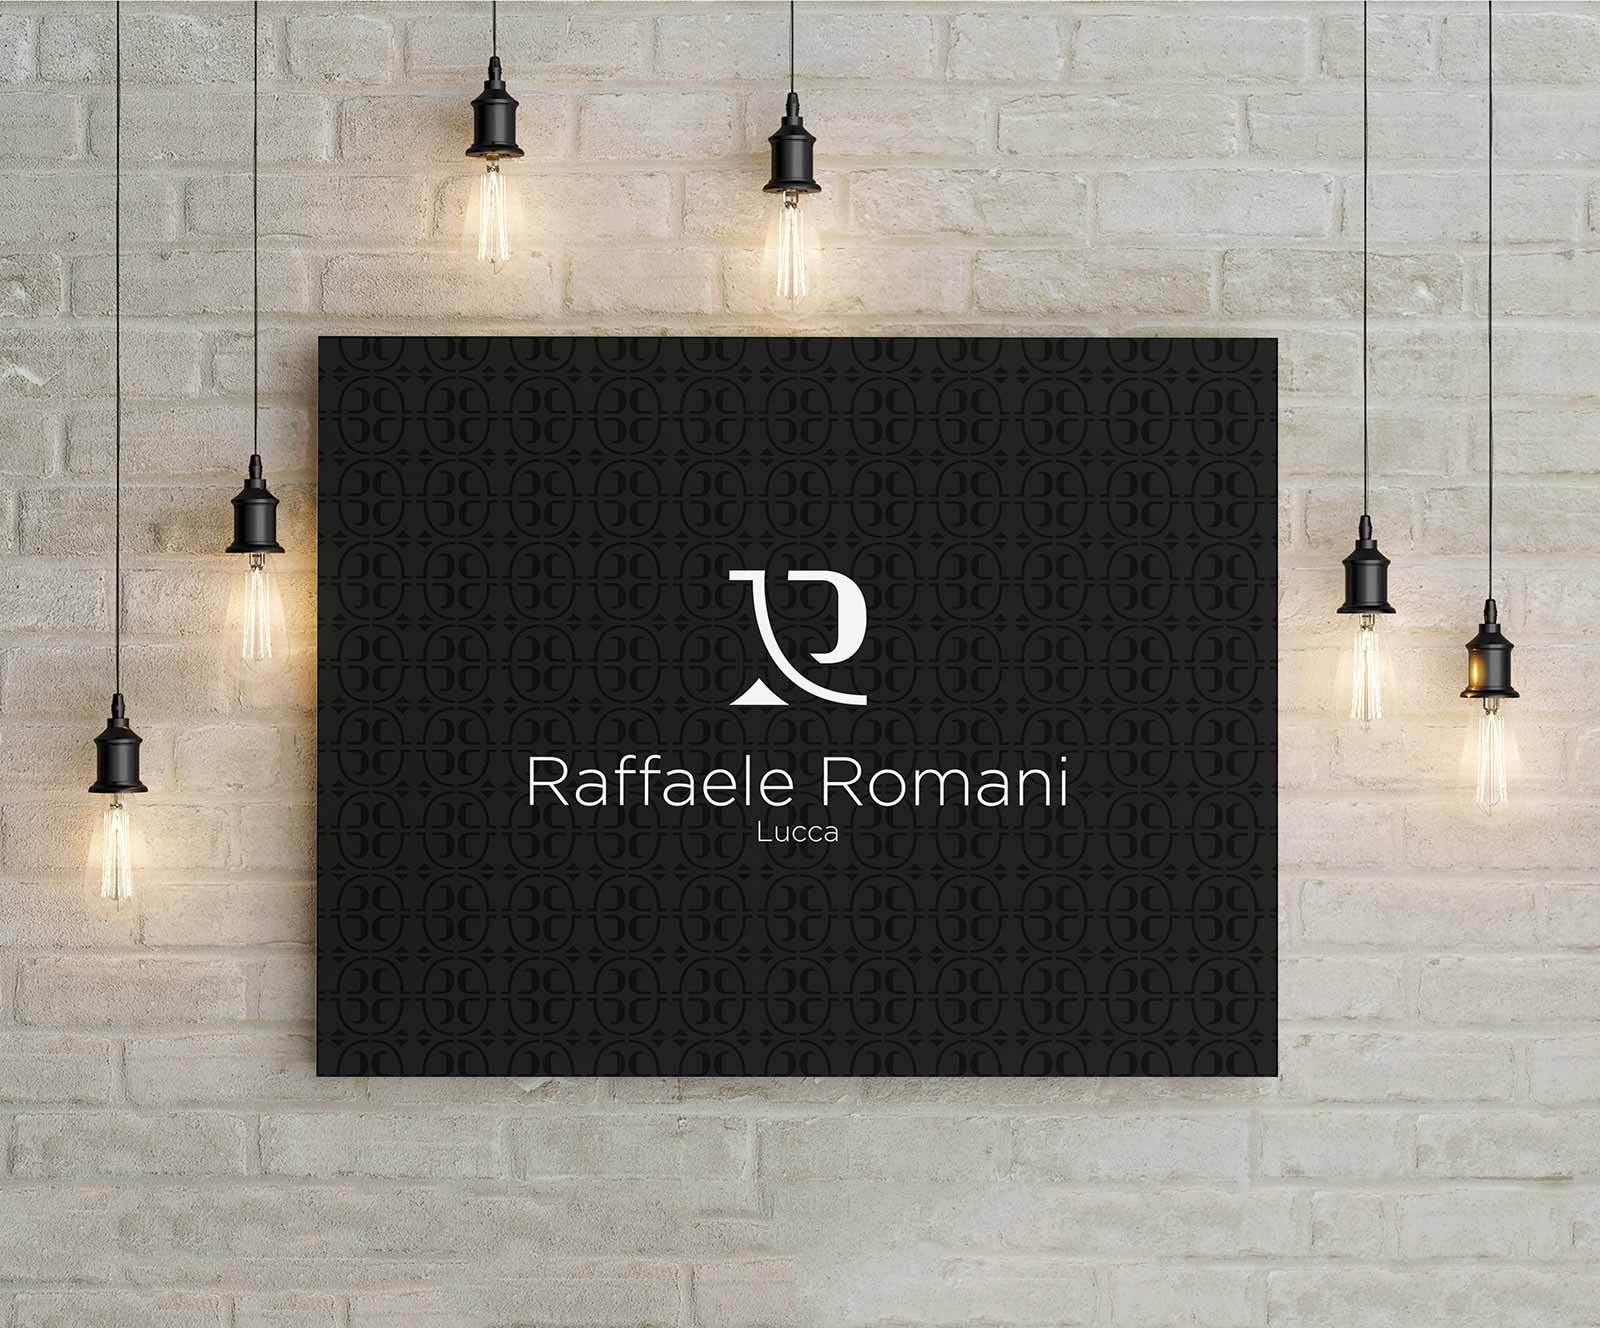 Logo e brand identity di Raffaele Romani realizzato da SEBA! grafico di Gravellona Toce nel VCO di un quadro con delle lampade